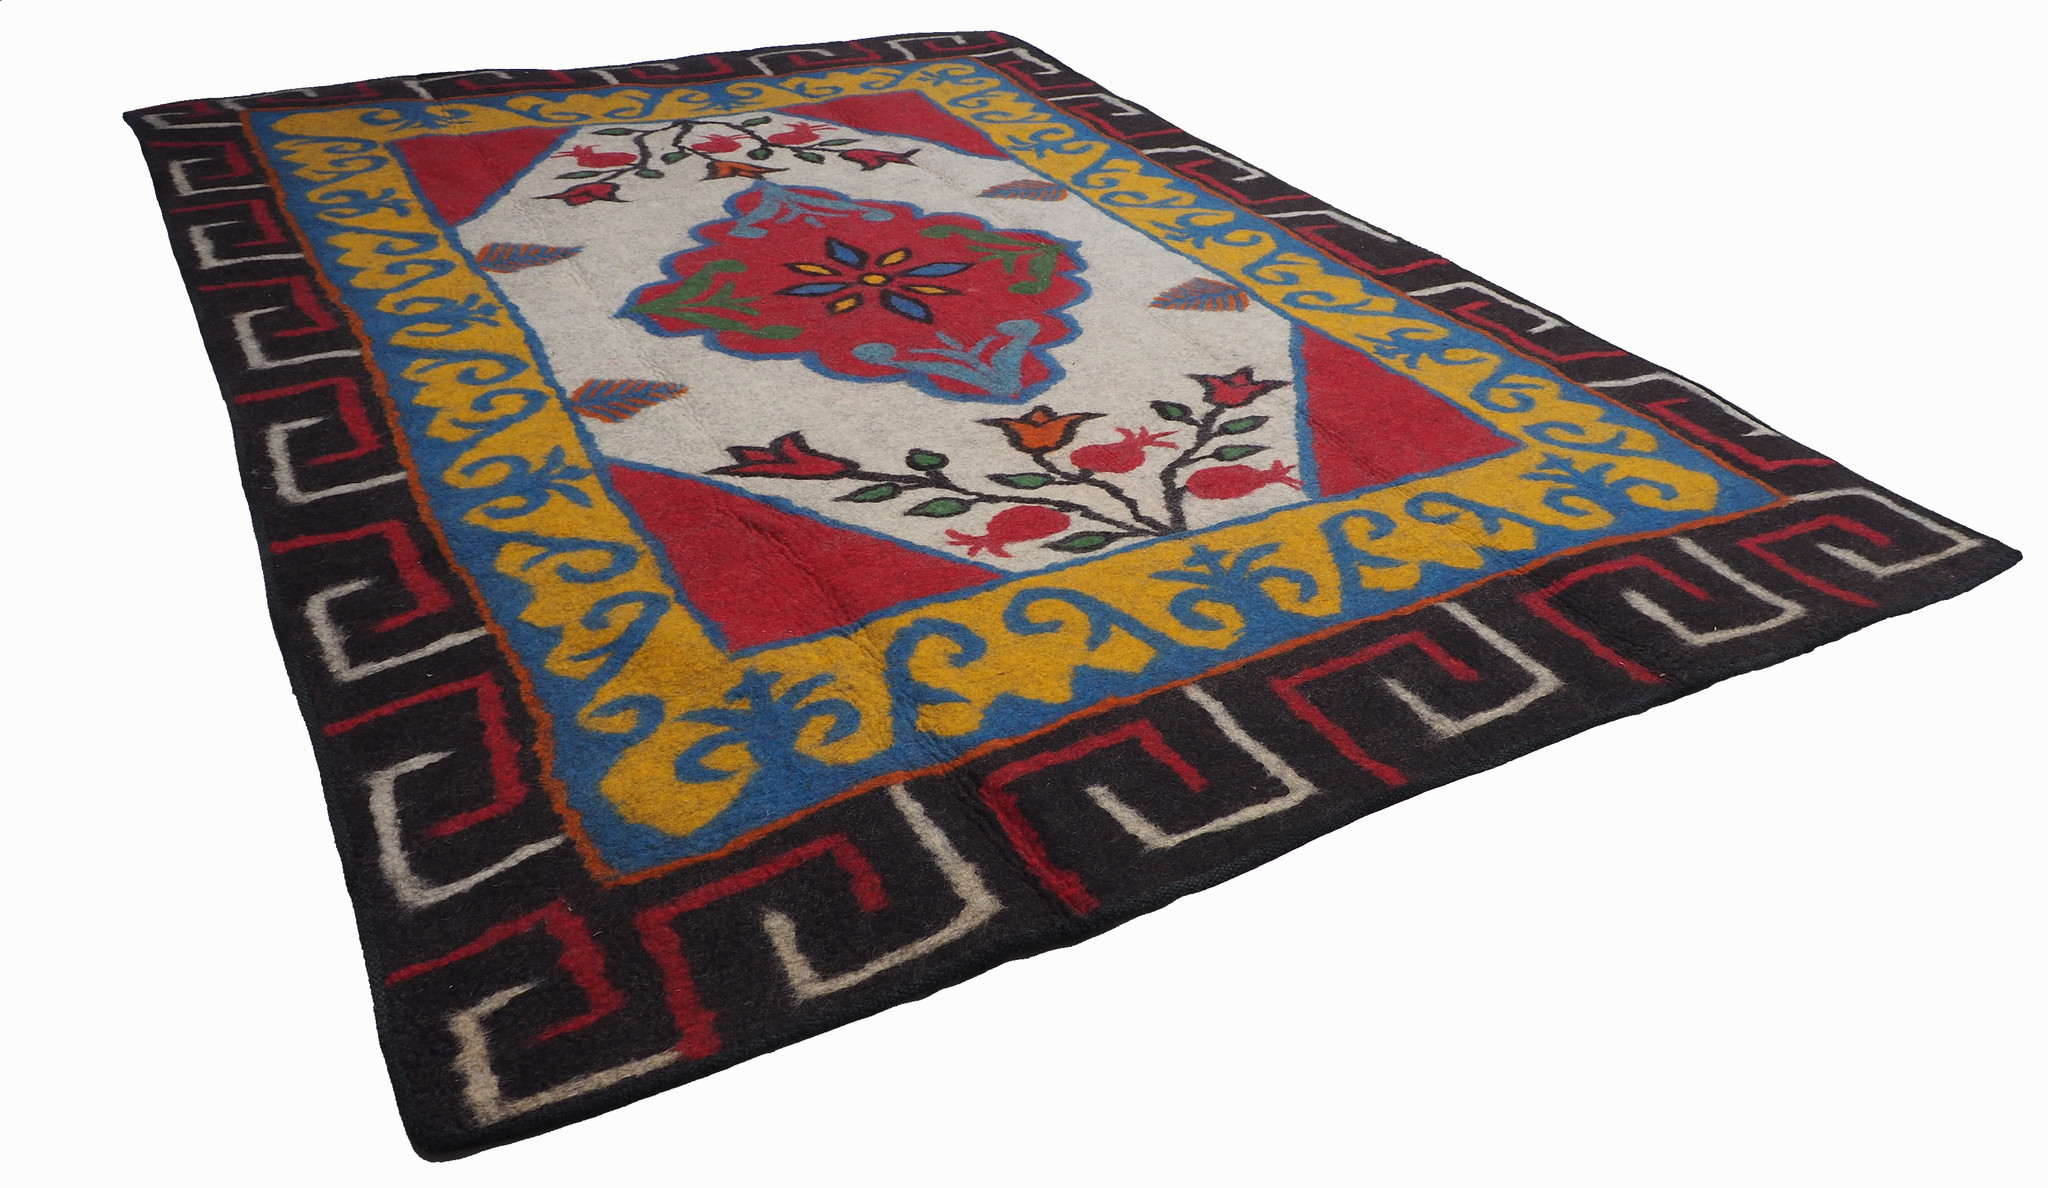 296x210 cm orient handgewebte Teppich Nomaden handgearbeitete Turkmenische nomanden Jurten Filzteppich Filz aus Nor Afghanistan shyrdak N701